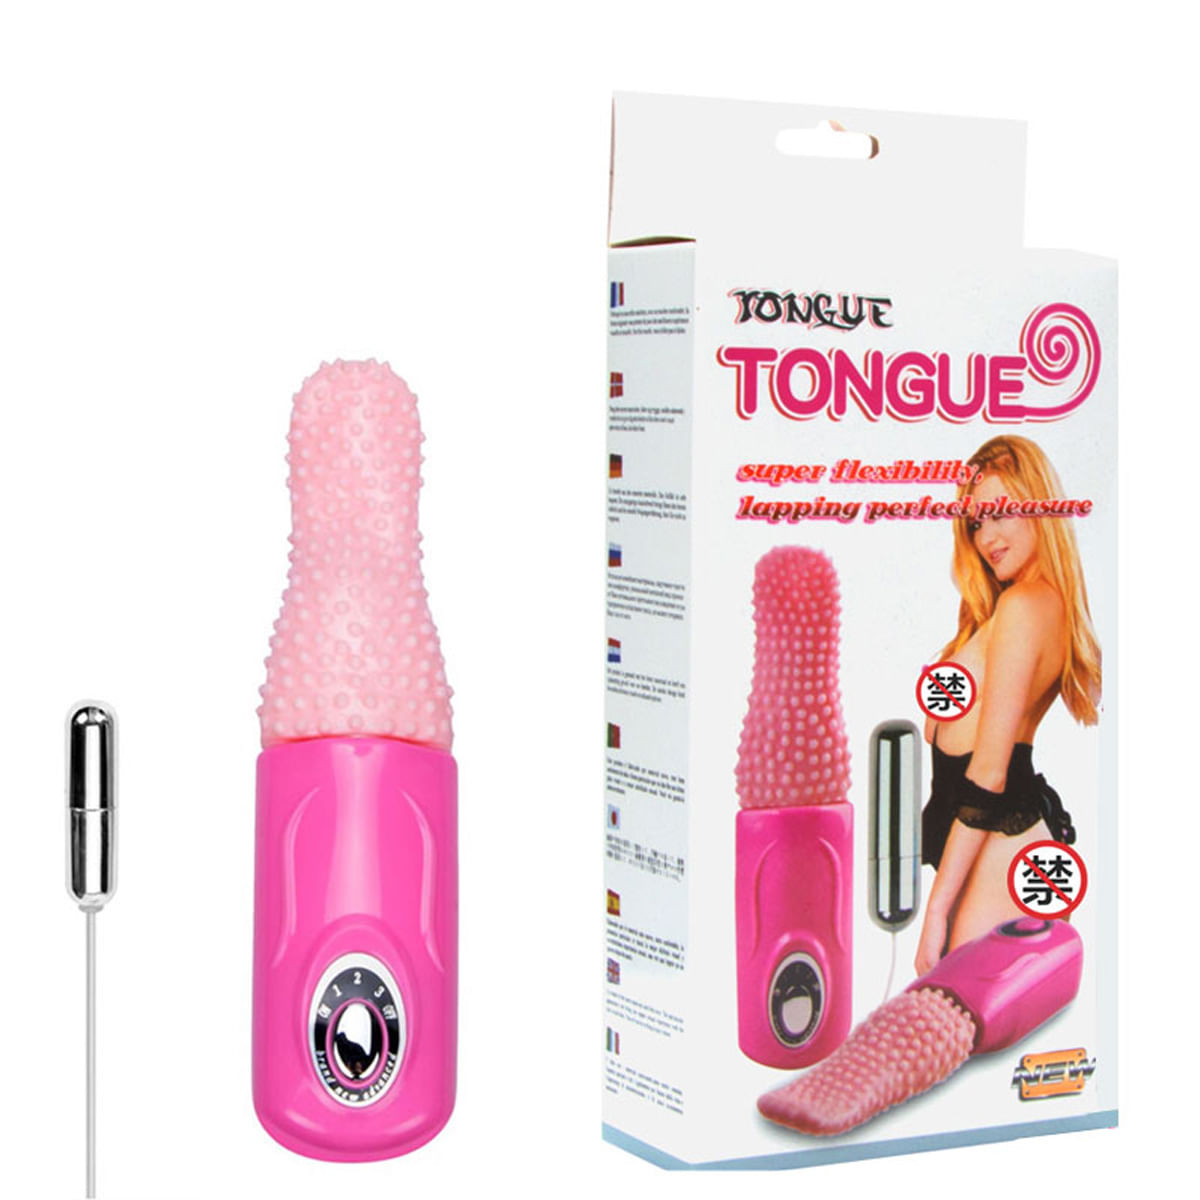 Tongue Vibrador em Formato de Língua com Cápsula Vibratória e 3 Modos de Vibração 3R Import